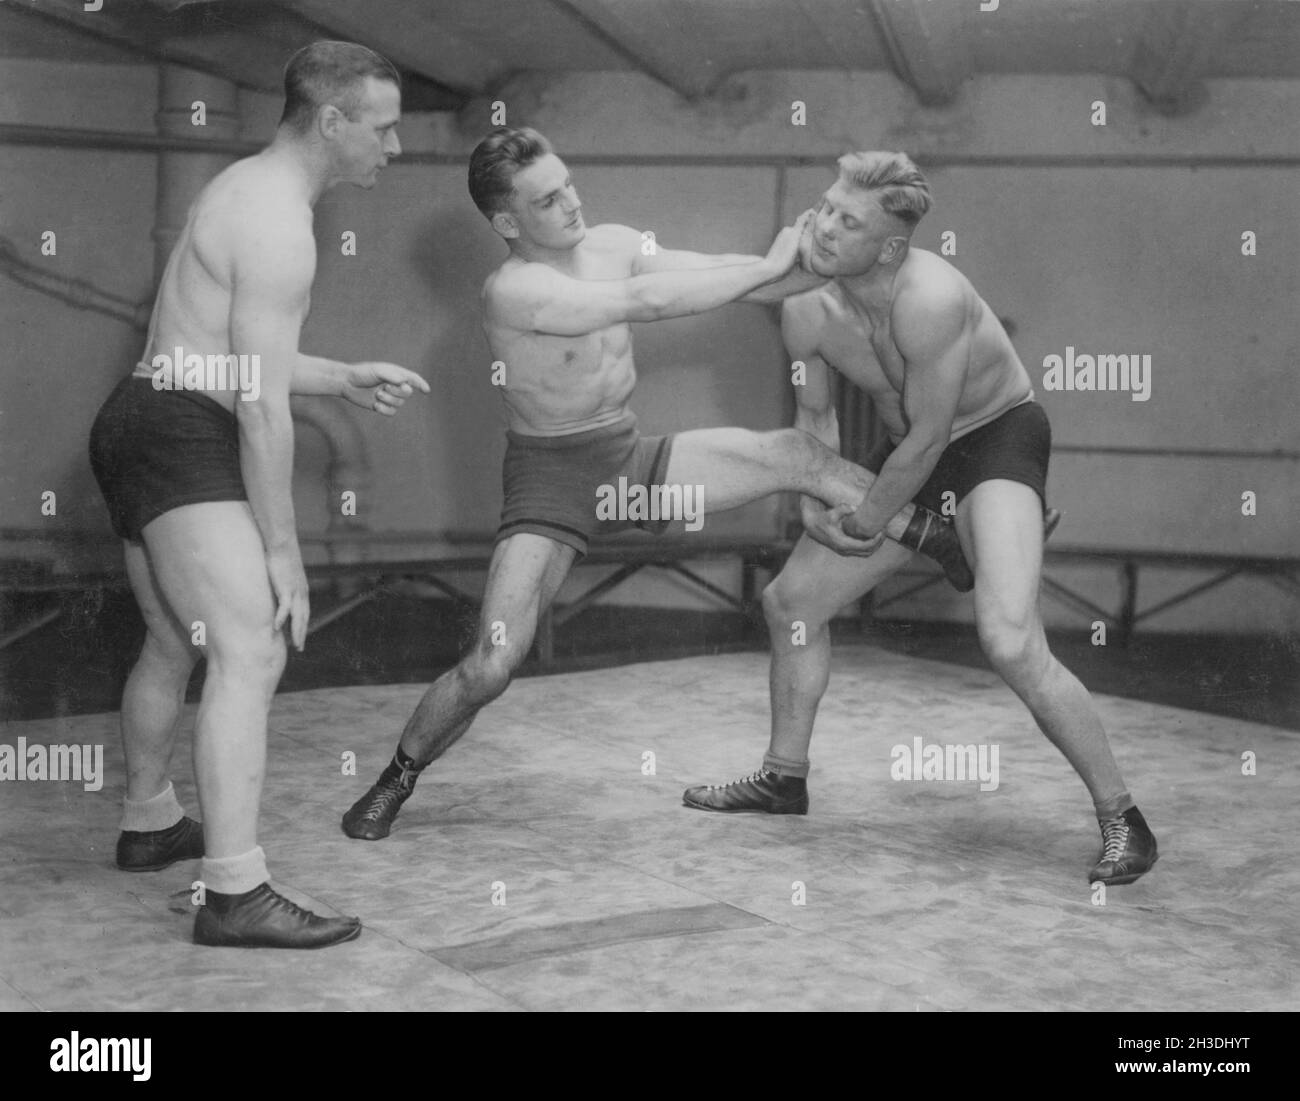 Lotta negli anni '30. Il campione svedese di lotta olimpica Ivar Johansson 1903-1979 a sinistra lotta con il wrestler americano Baker. Entrambi i lottatori sembrano avere una presa l'uno sull'altro ed è difficile dire chi ha la mano. Foto Stock